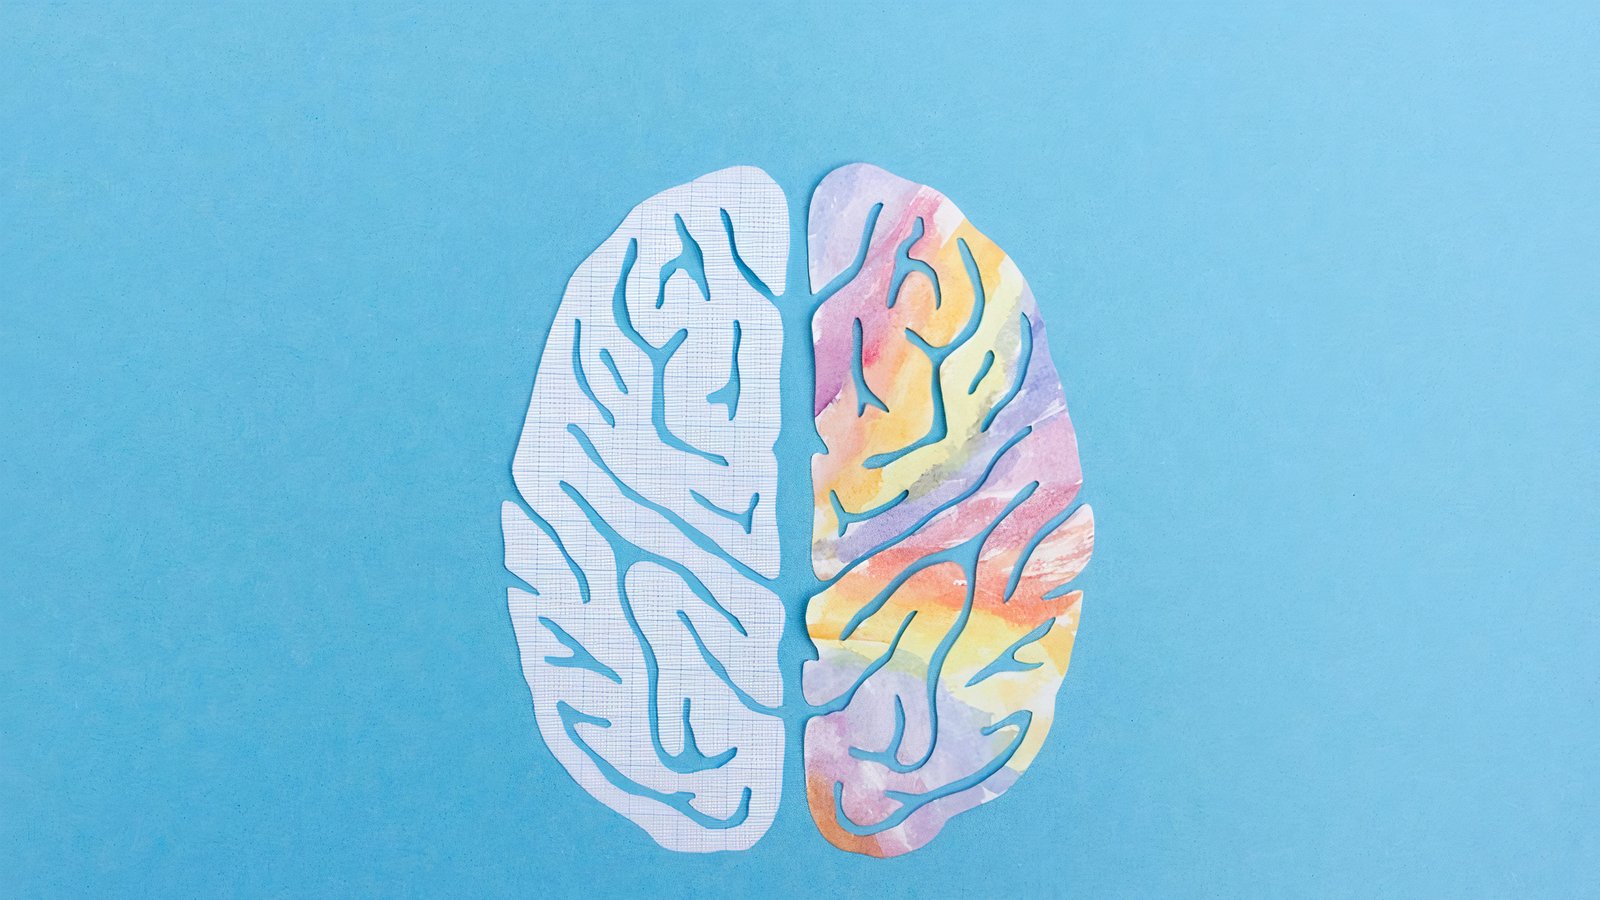 Поражение левого полушария мозга. Рисование правым полушарием мозга. Функциональная асимметрия полушарий мозга. Картинка правого полушария для детей. Игра для развития мозга по цветам.